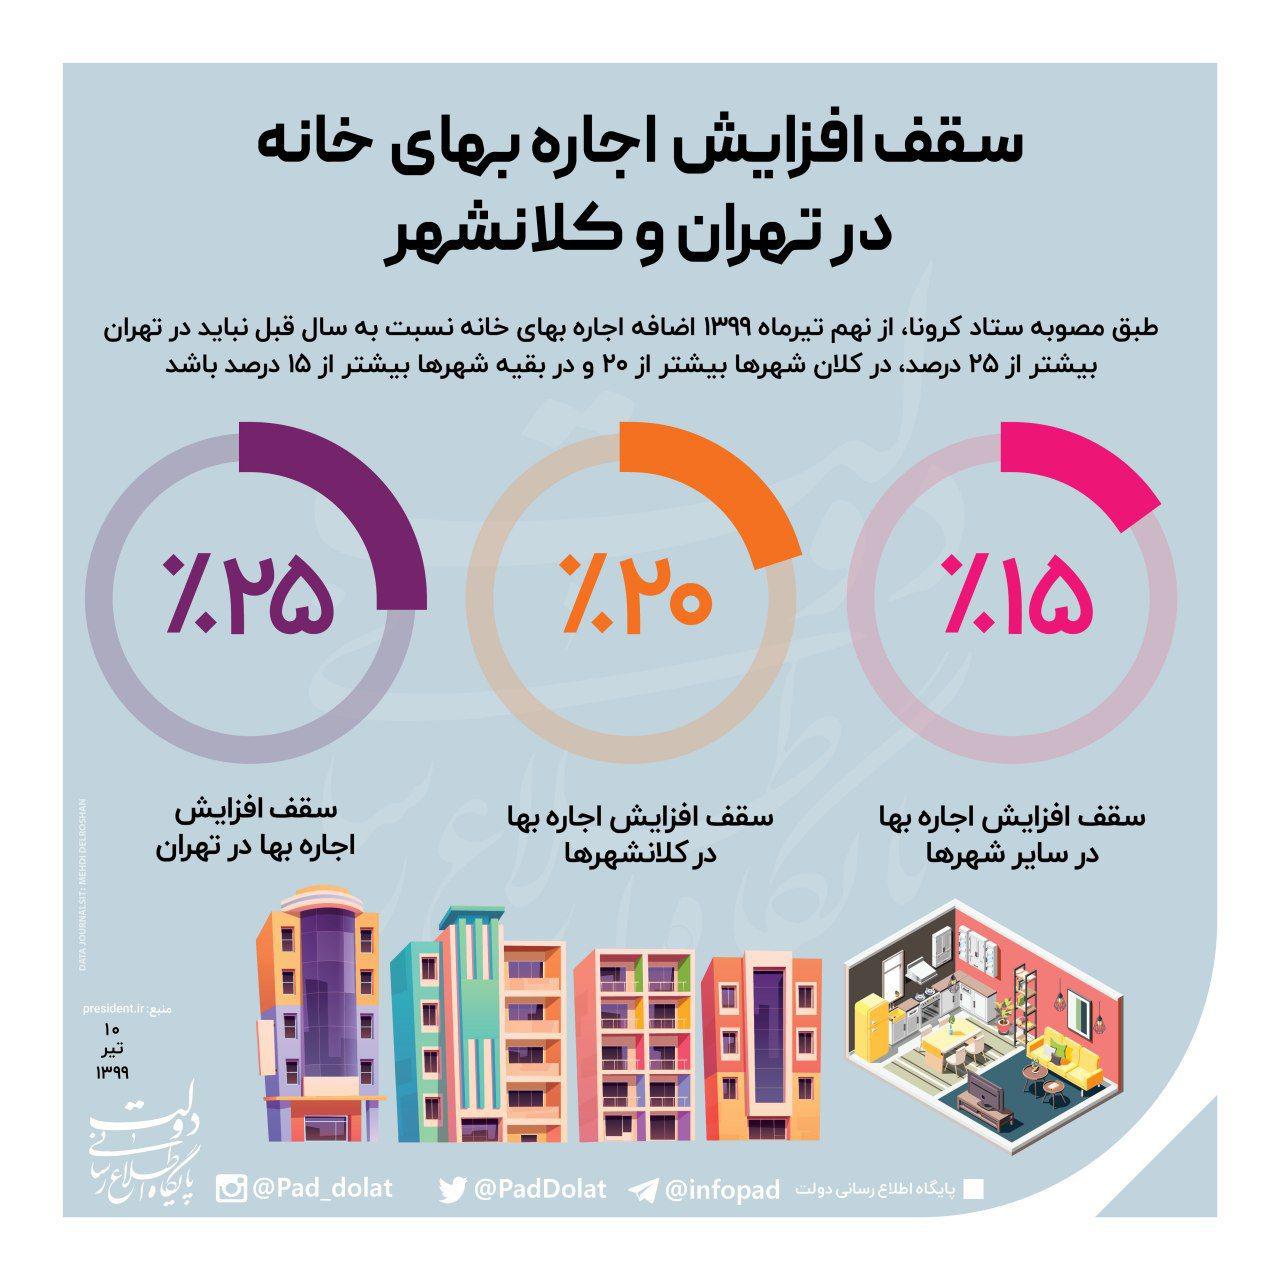 اینفوگرافی/ سقف افزایش اجاره بهای خانه در تهران و کلانشهر